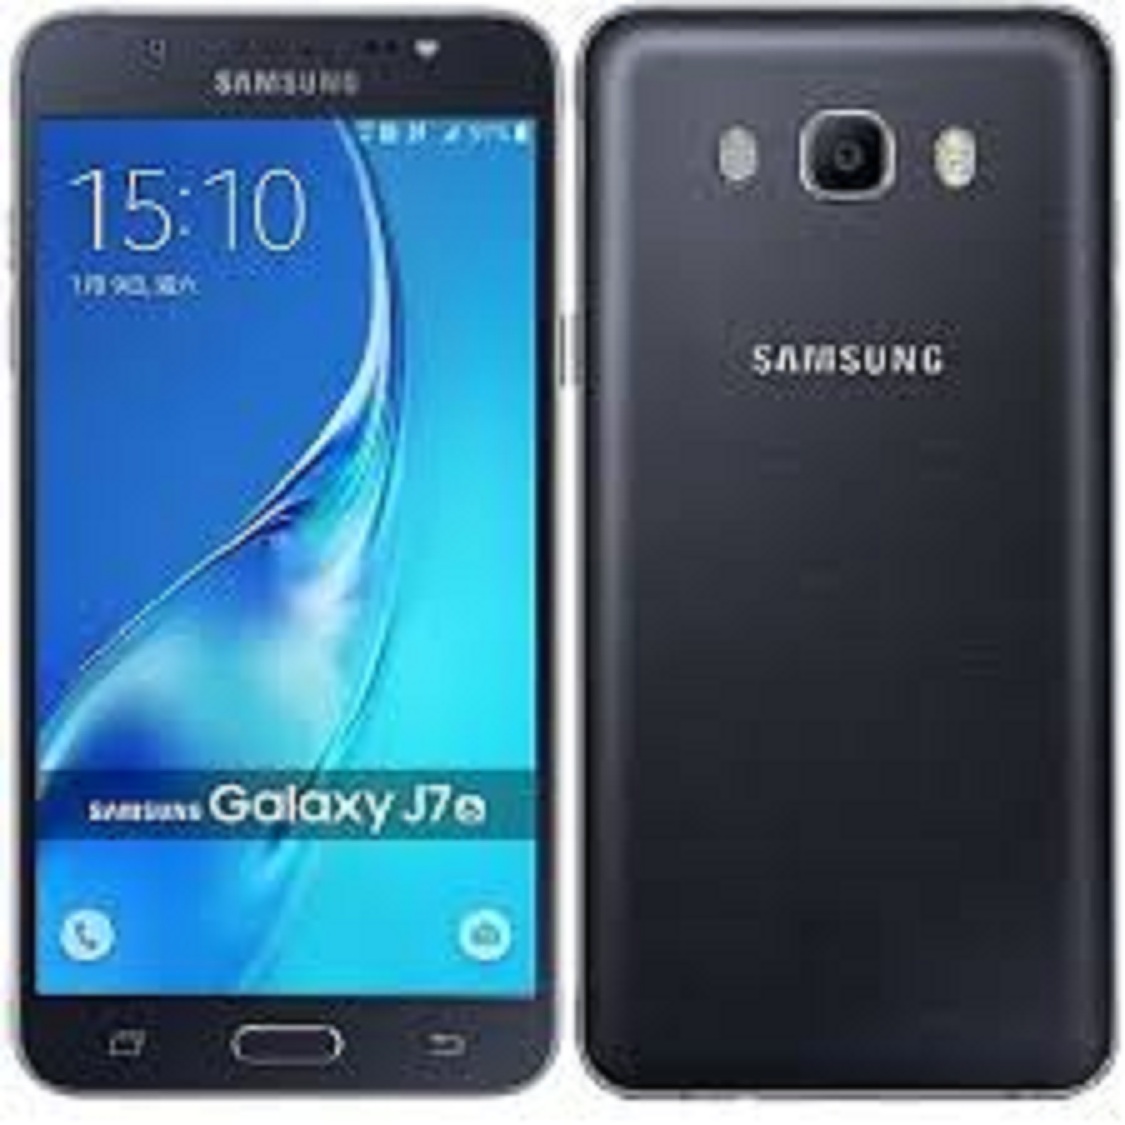 [ Giảm Giá Siêu Sốc ] điện thoại giá siêu rẻ Samsung Galaxy J7 Pro máy 2sim ran 3/32G Chính Hãng, Màn hình: Super AMOLED, 5.5", HD - Bảo hành 12 tháng